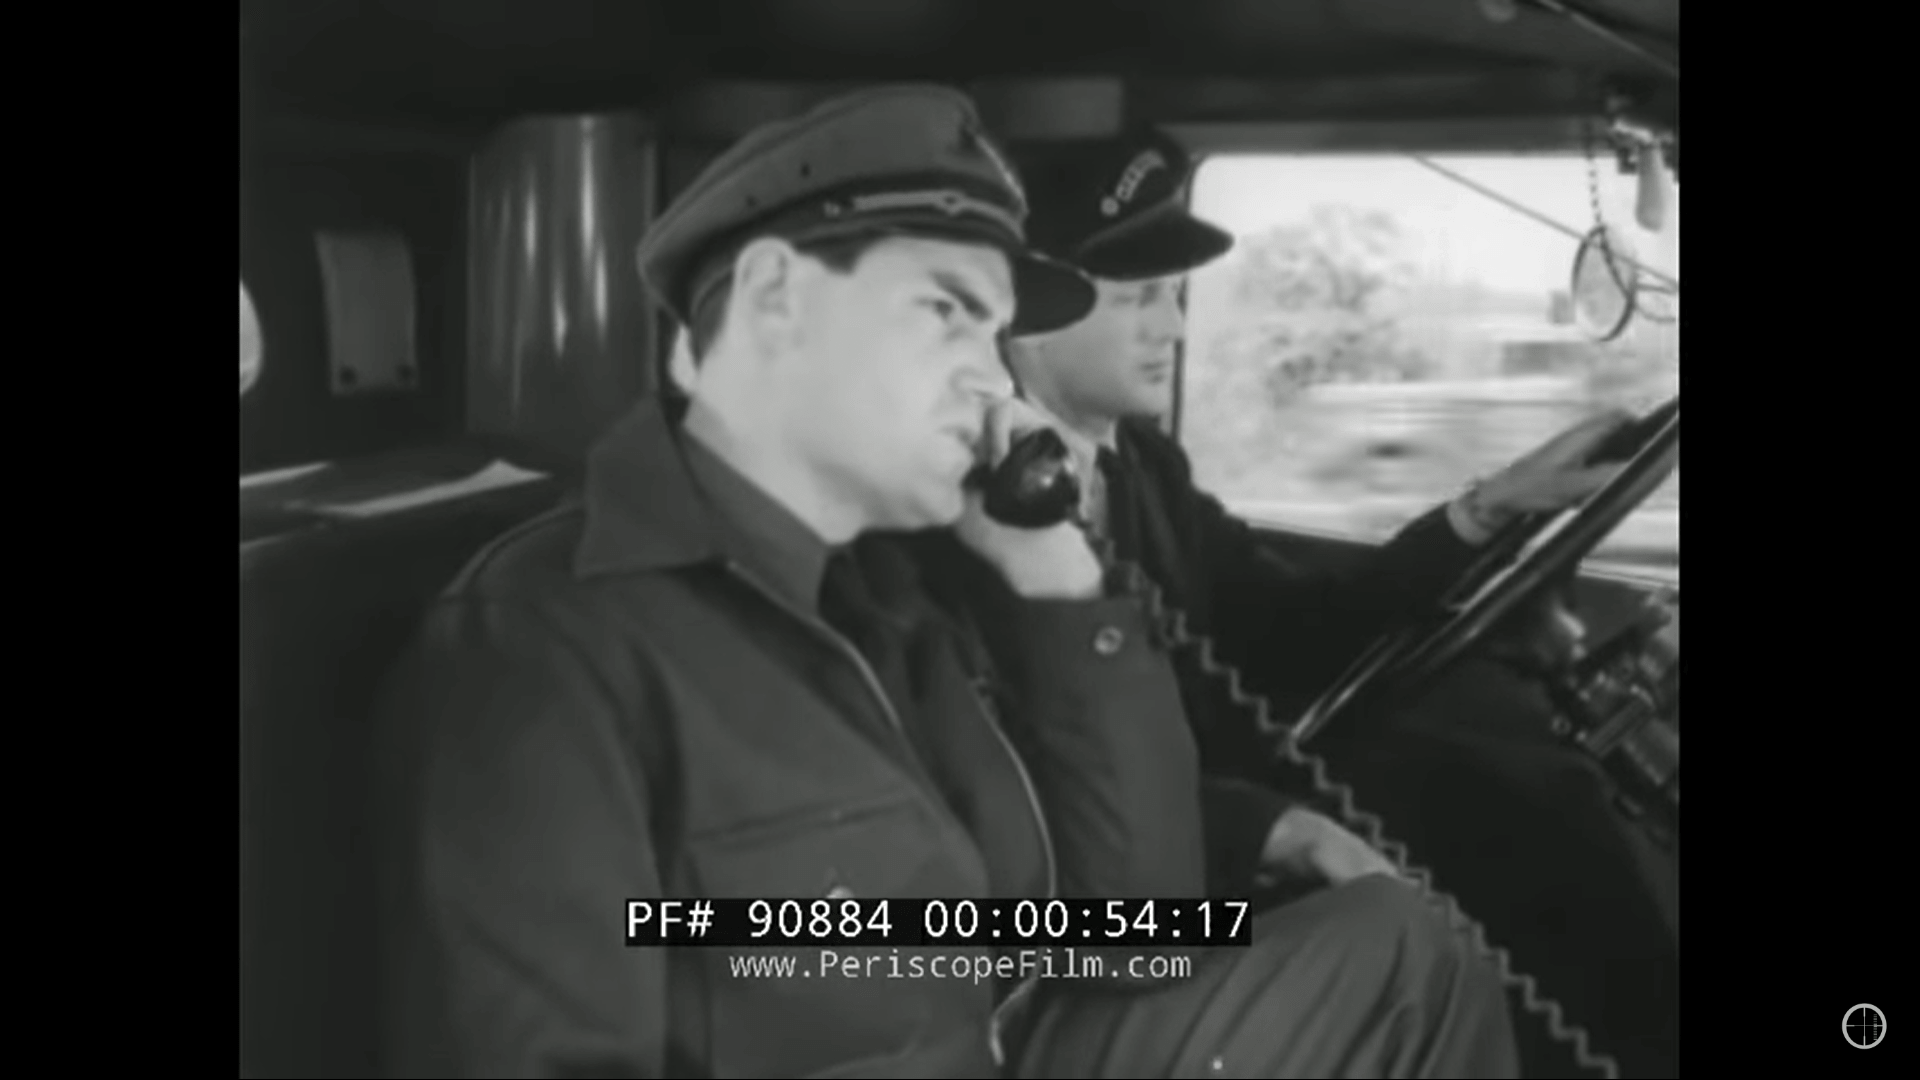 Đoạn video cũ vào nhưng năm 1940 cho thấy gì đã qua về điện thoại di động vào thời điểm đó